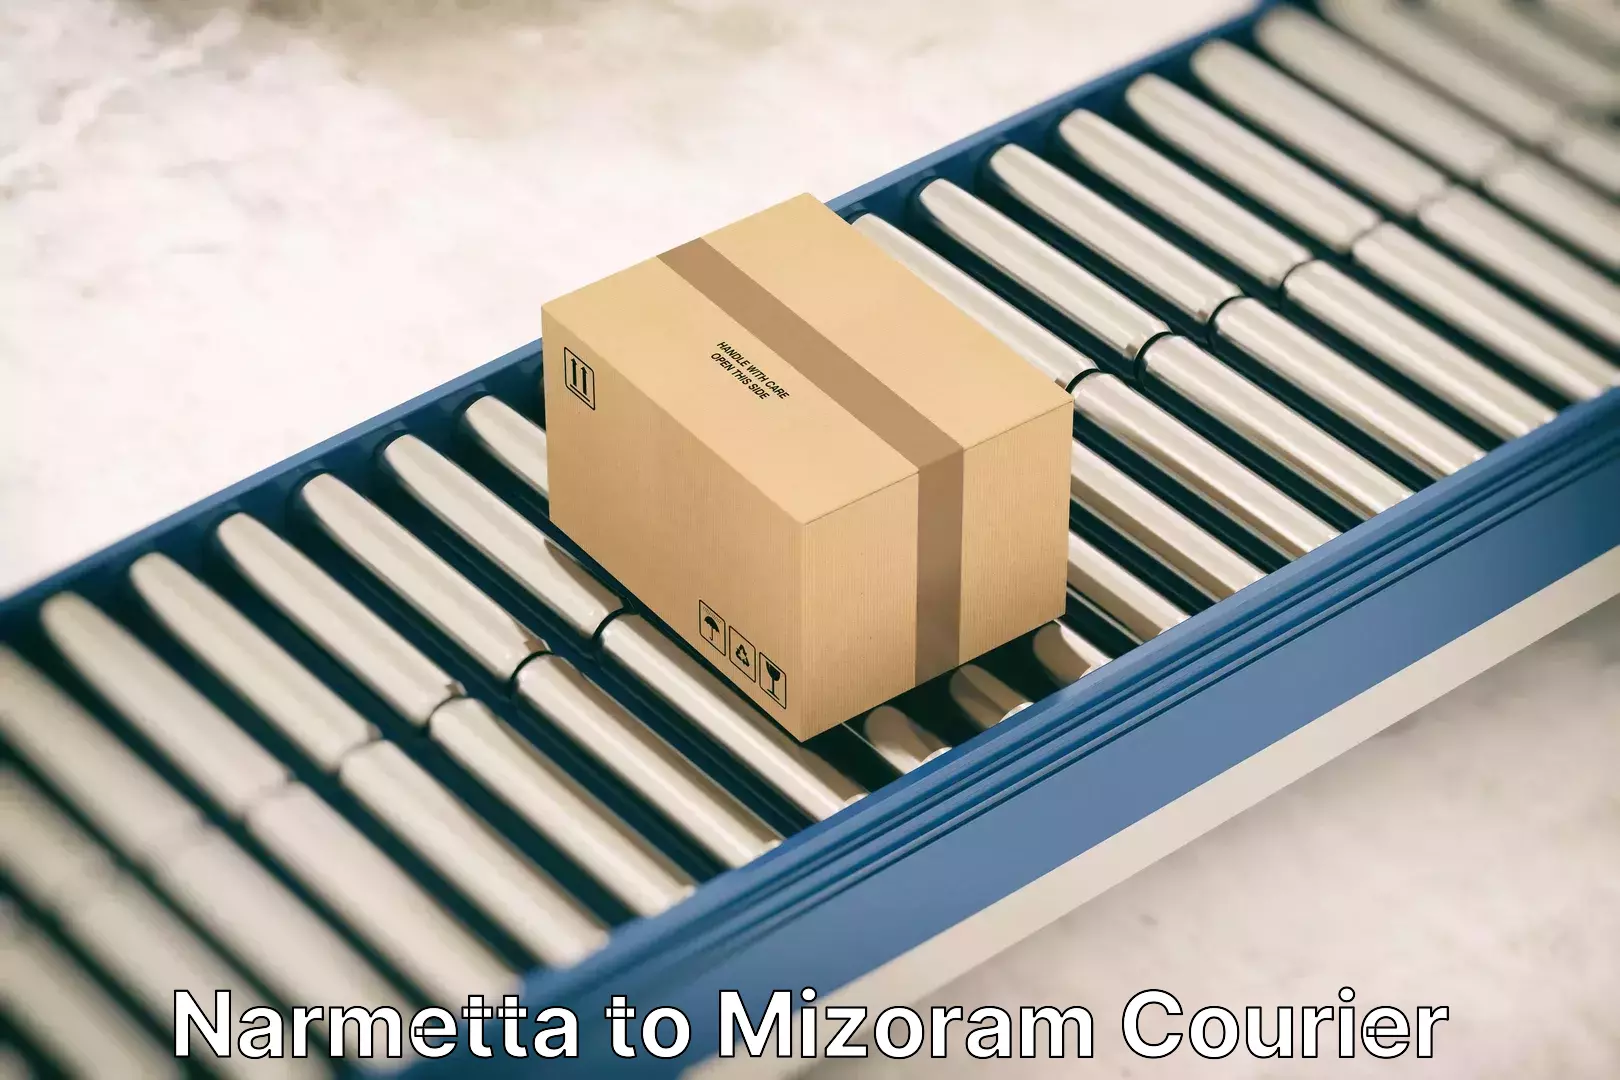 Furniture relocation services in Narmetta to Mizoram